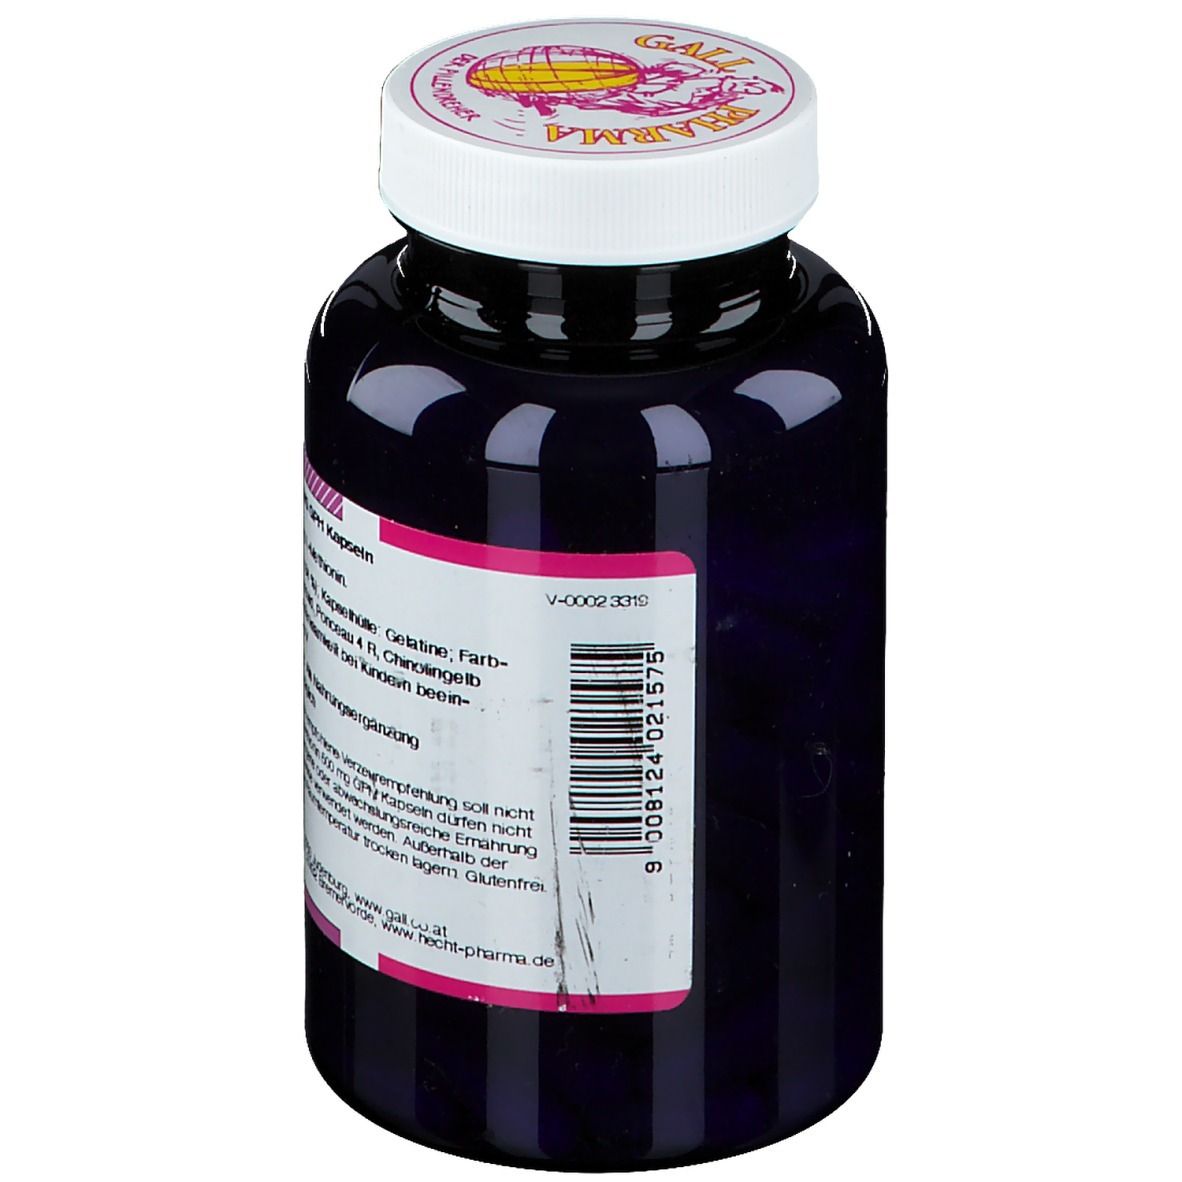 GALL PHARMA L-Methionin 500 mg